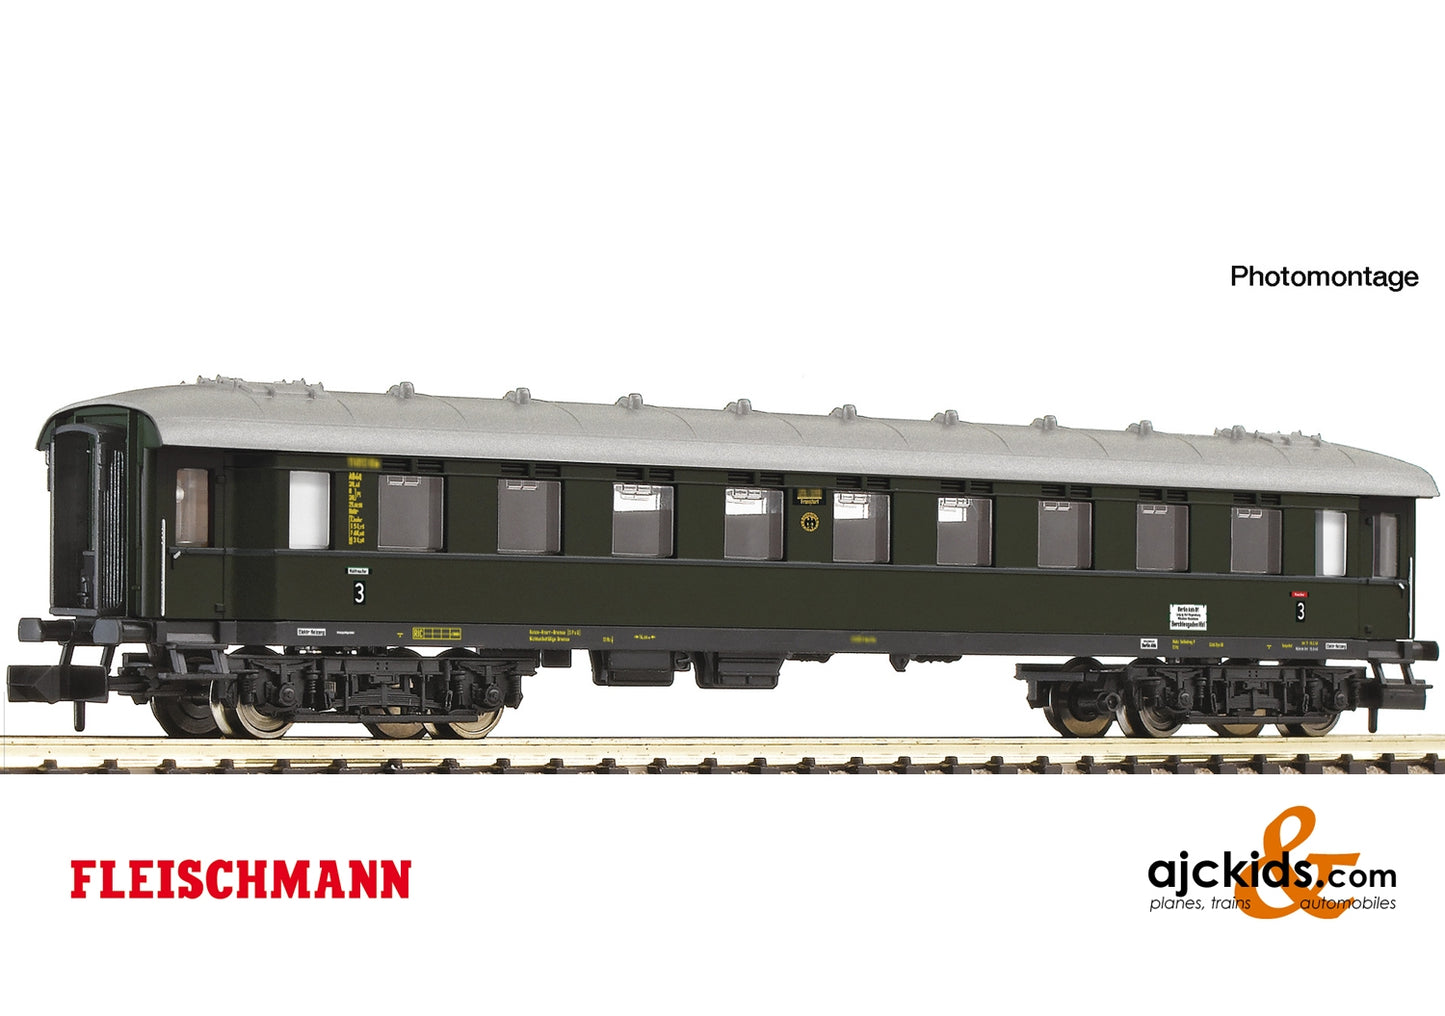 Fleischmann 863204 - 3rd class fast train coach